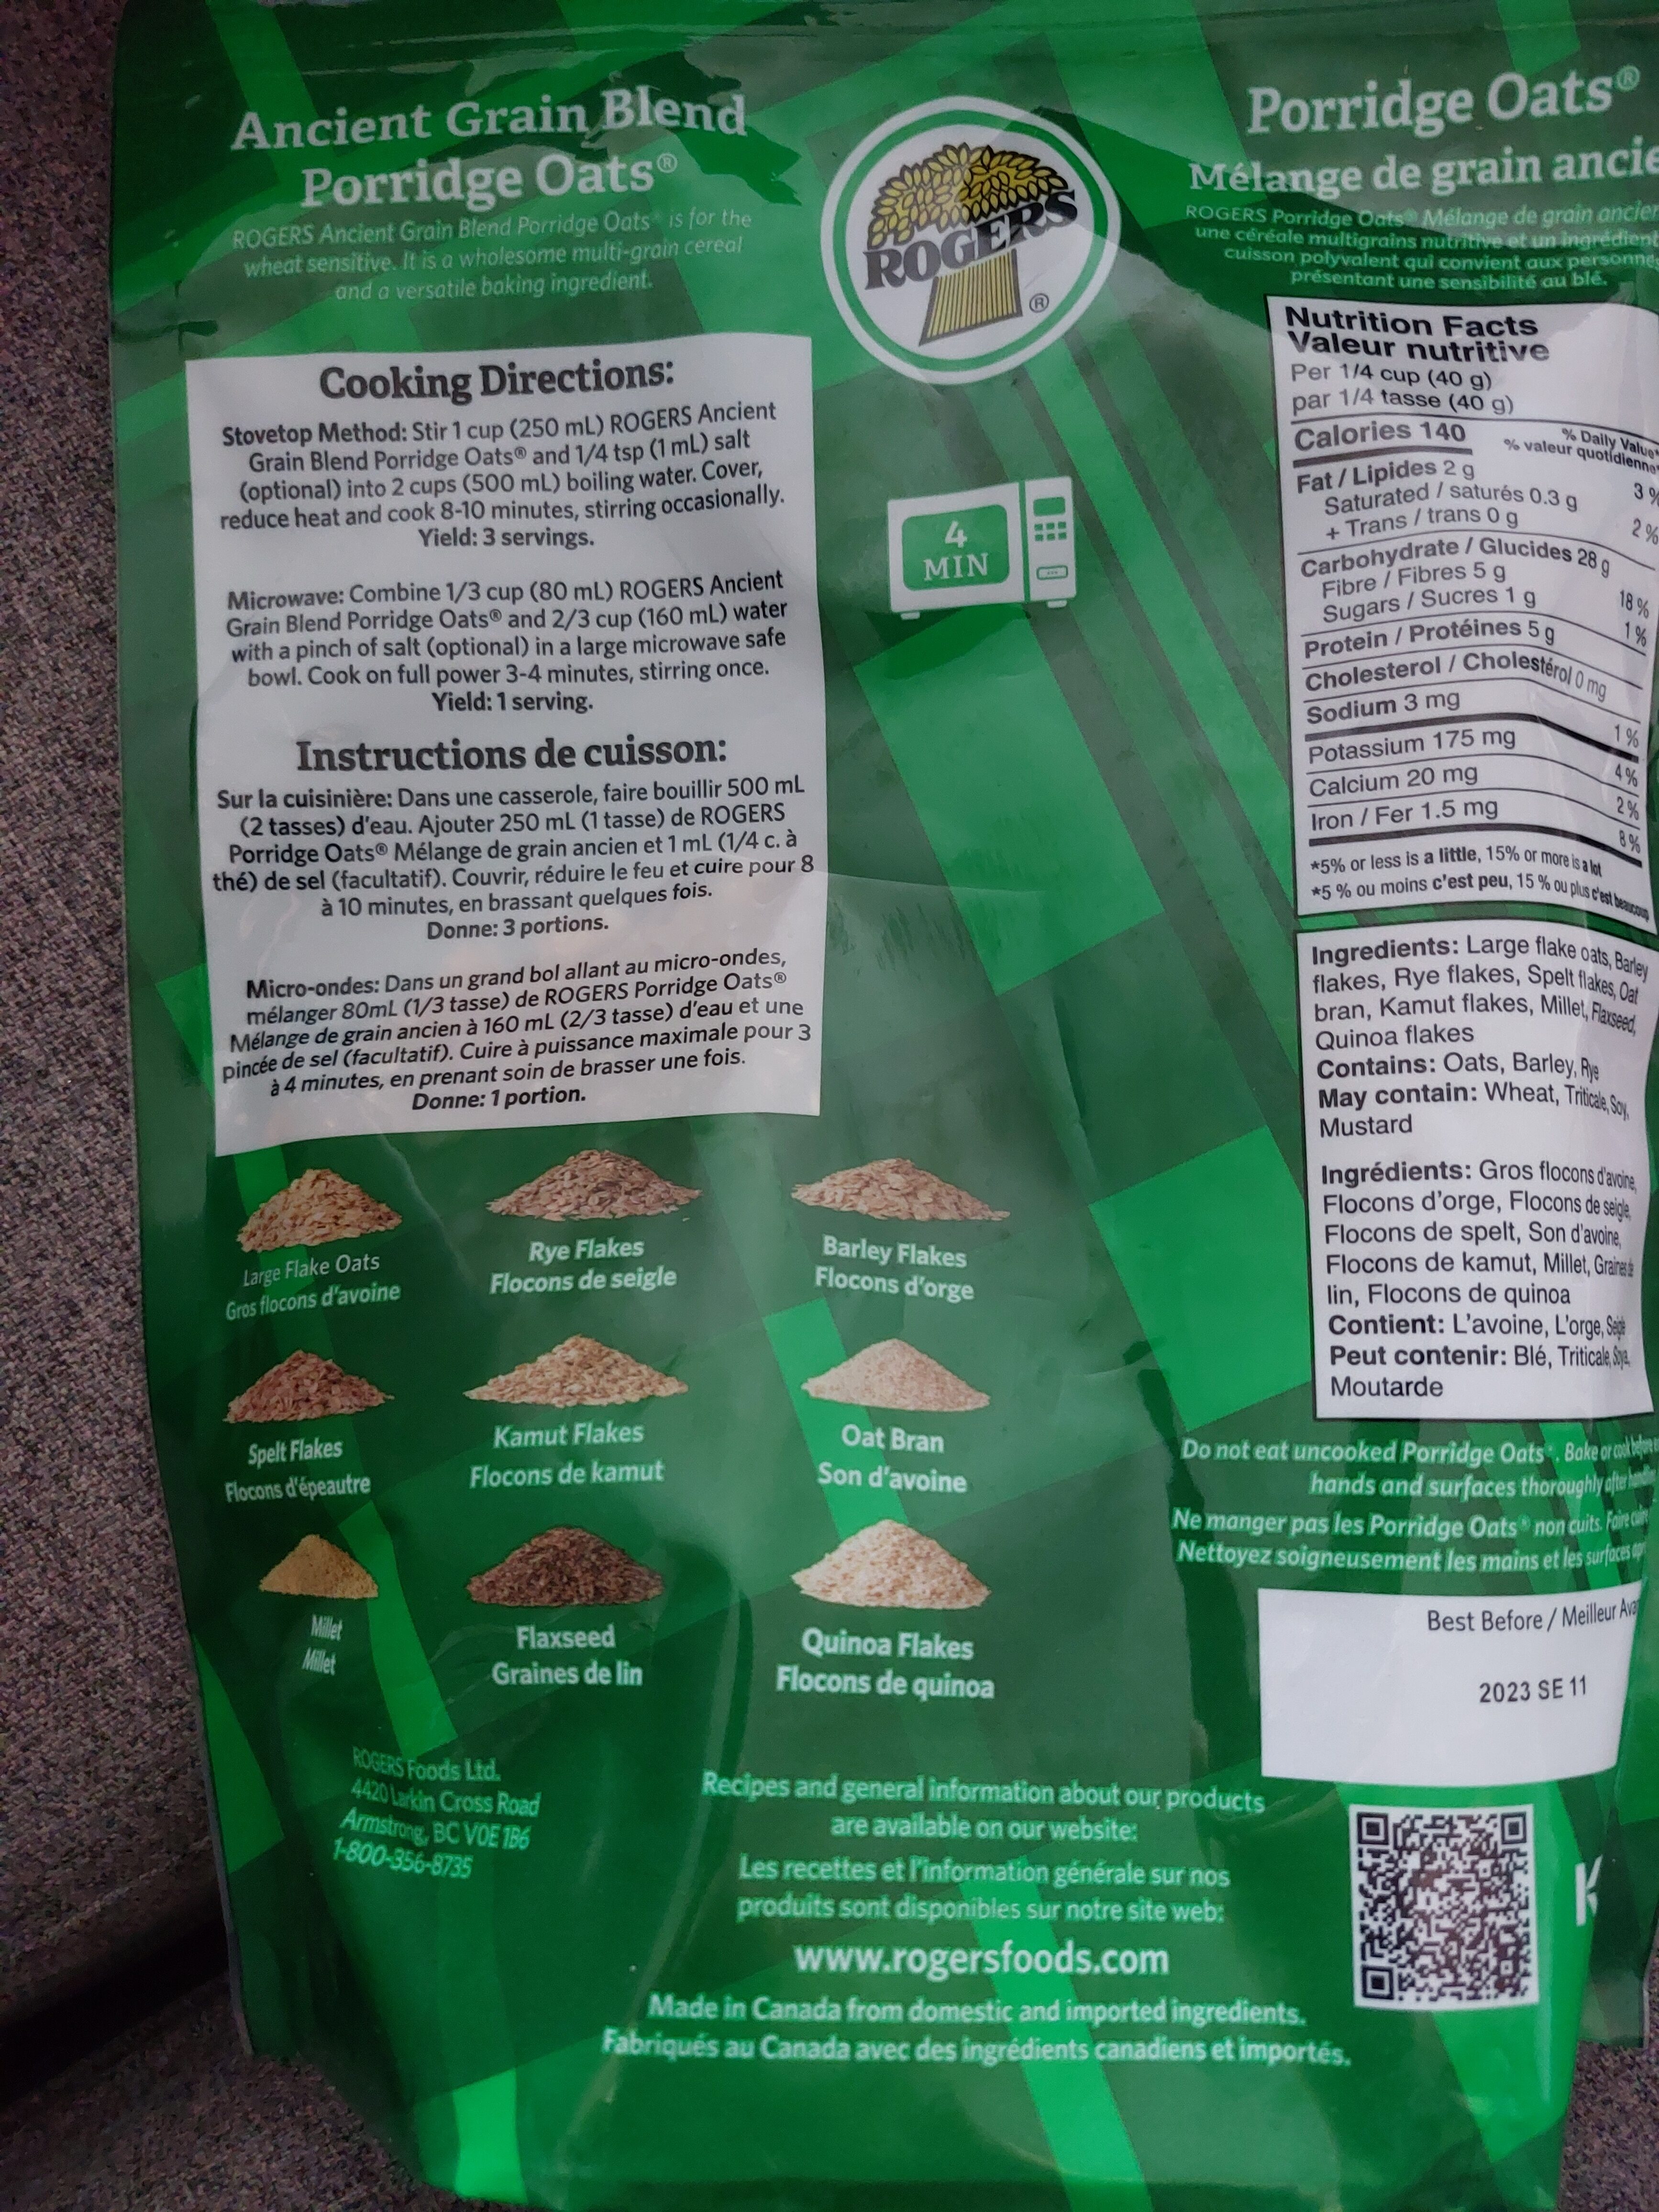 Porridge Oats & Ancient Grains - Instruction de recyclage et/ou informations d'emballage